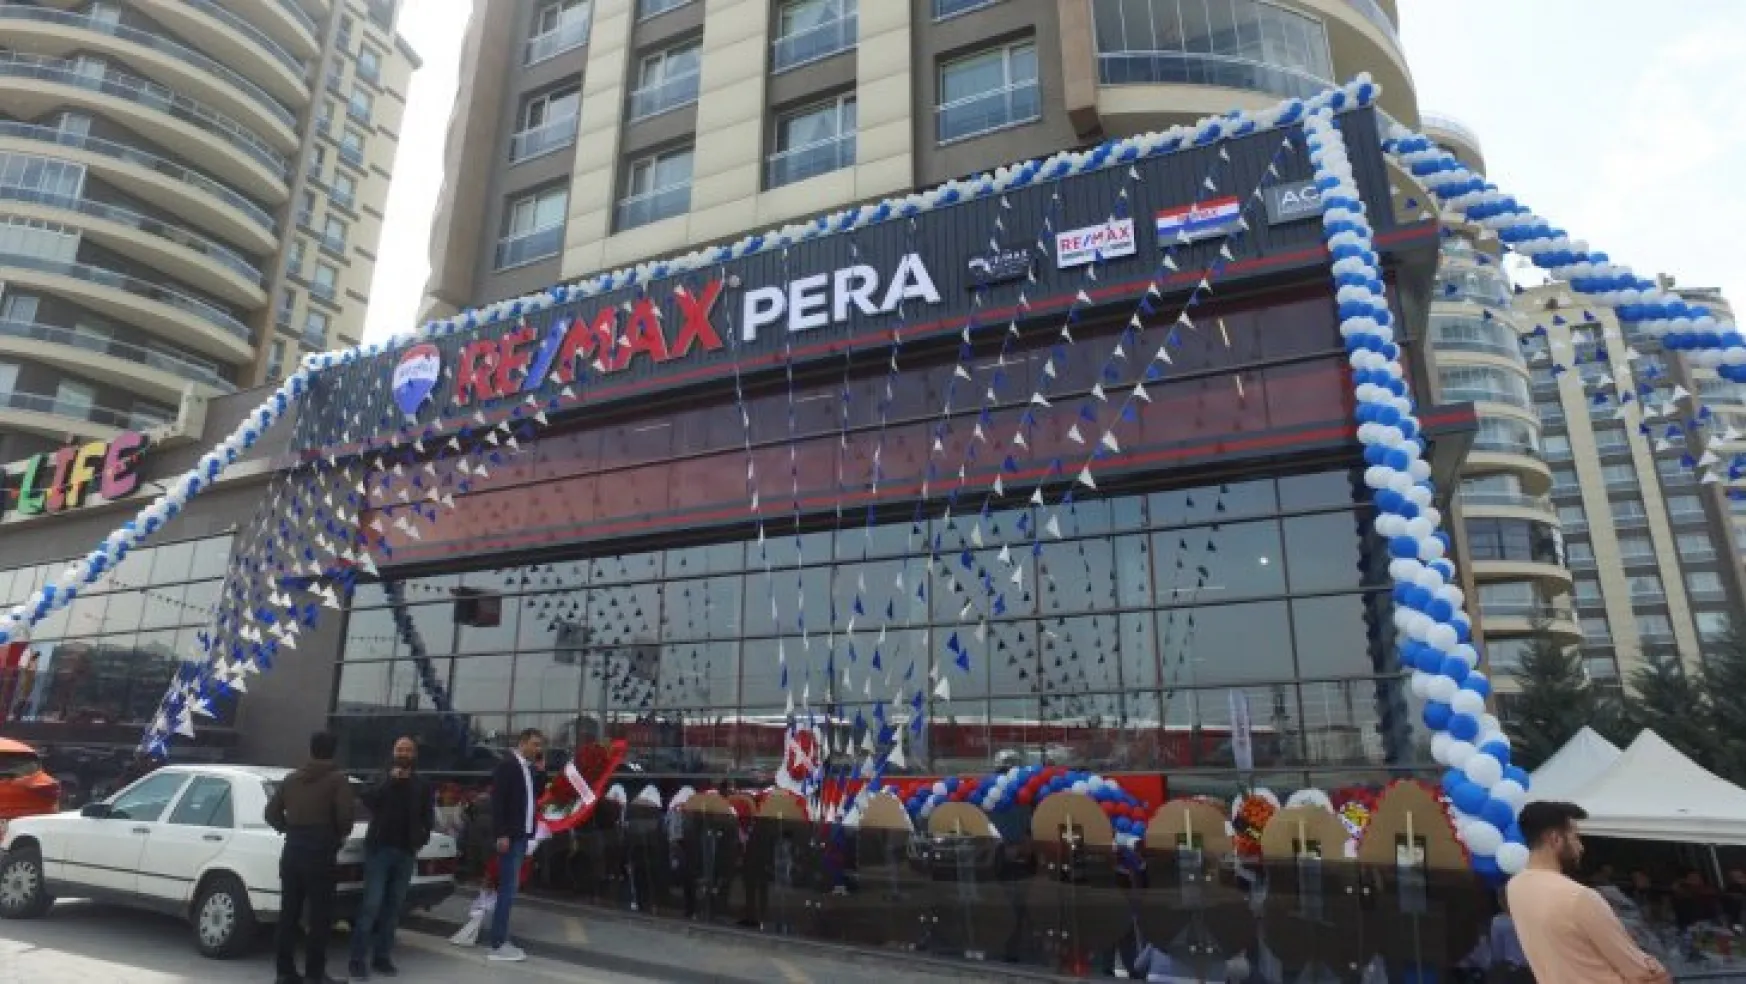 RE/MAX PERA, düzenlenen törenle hizmete açıldı